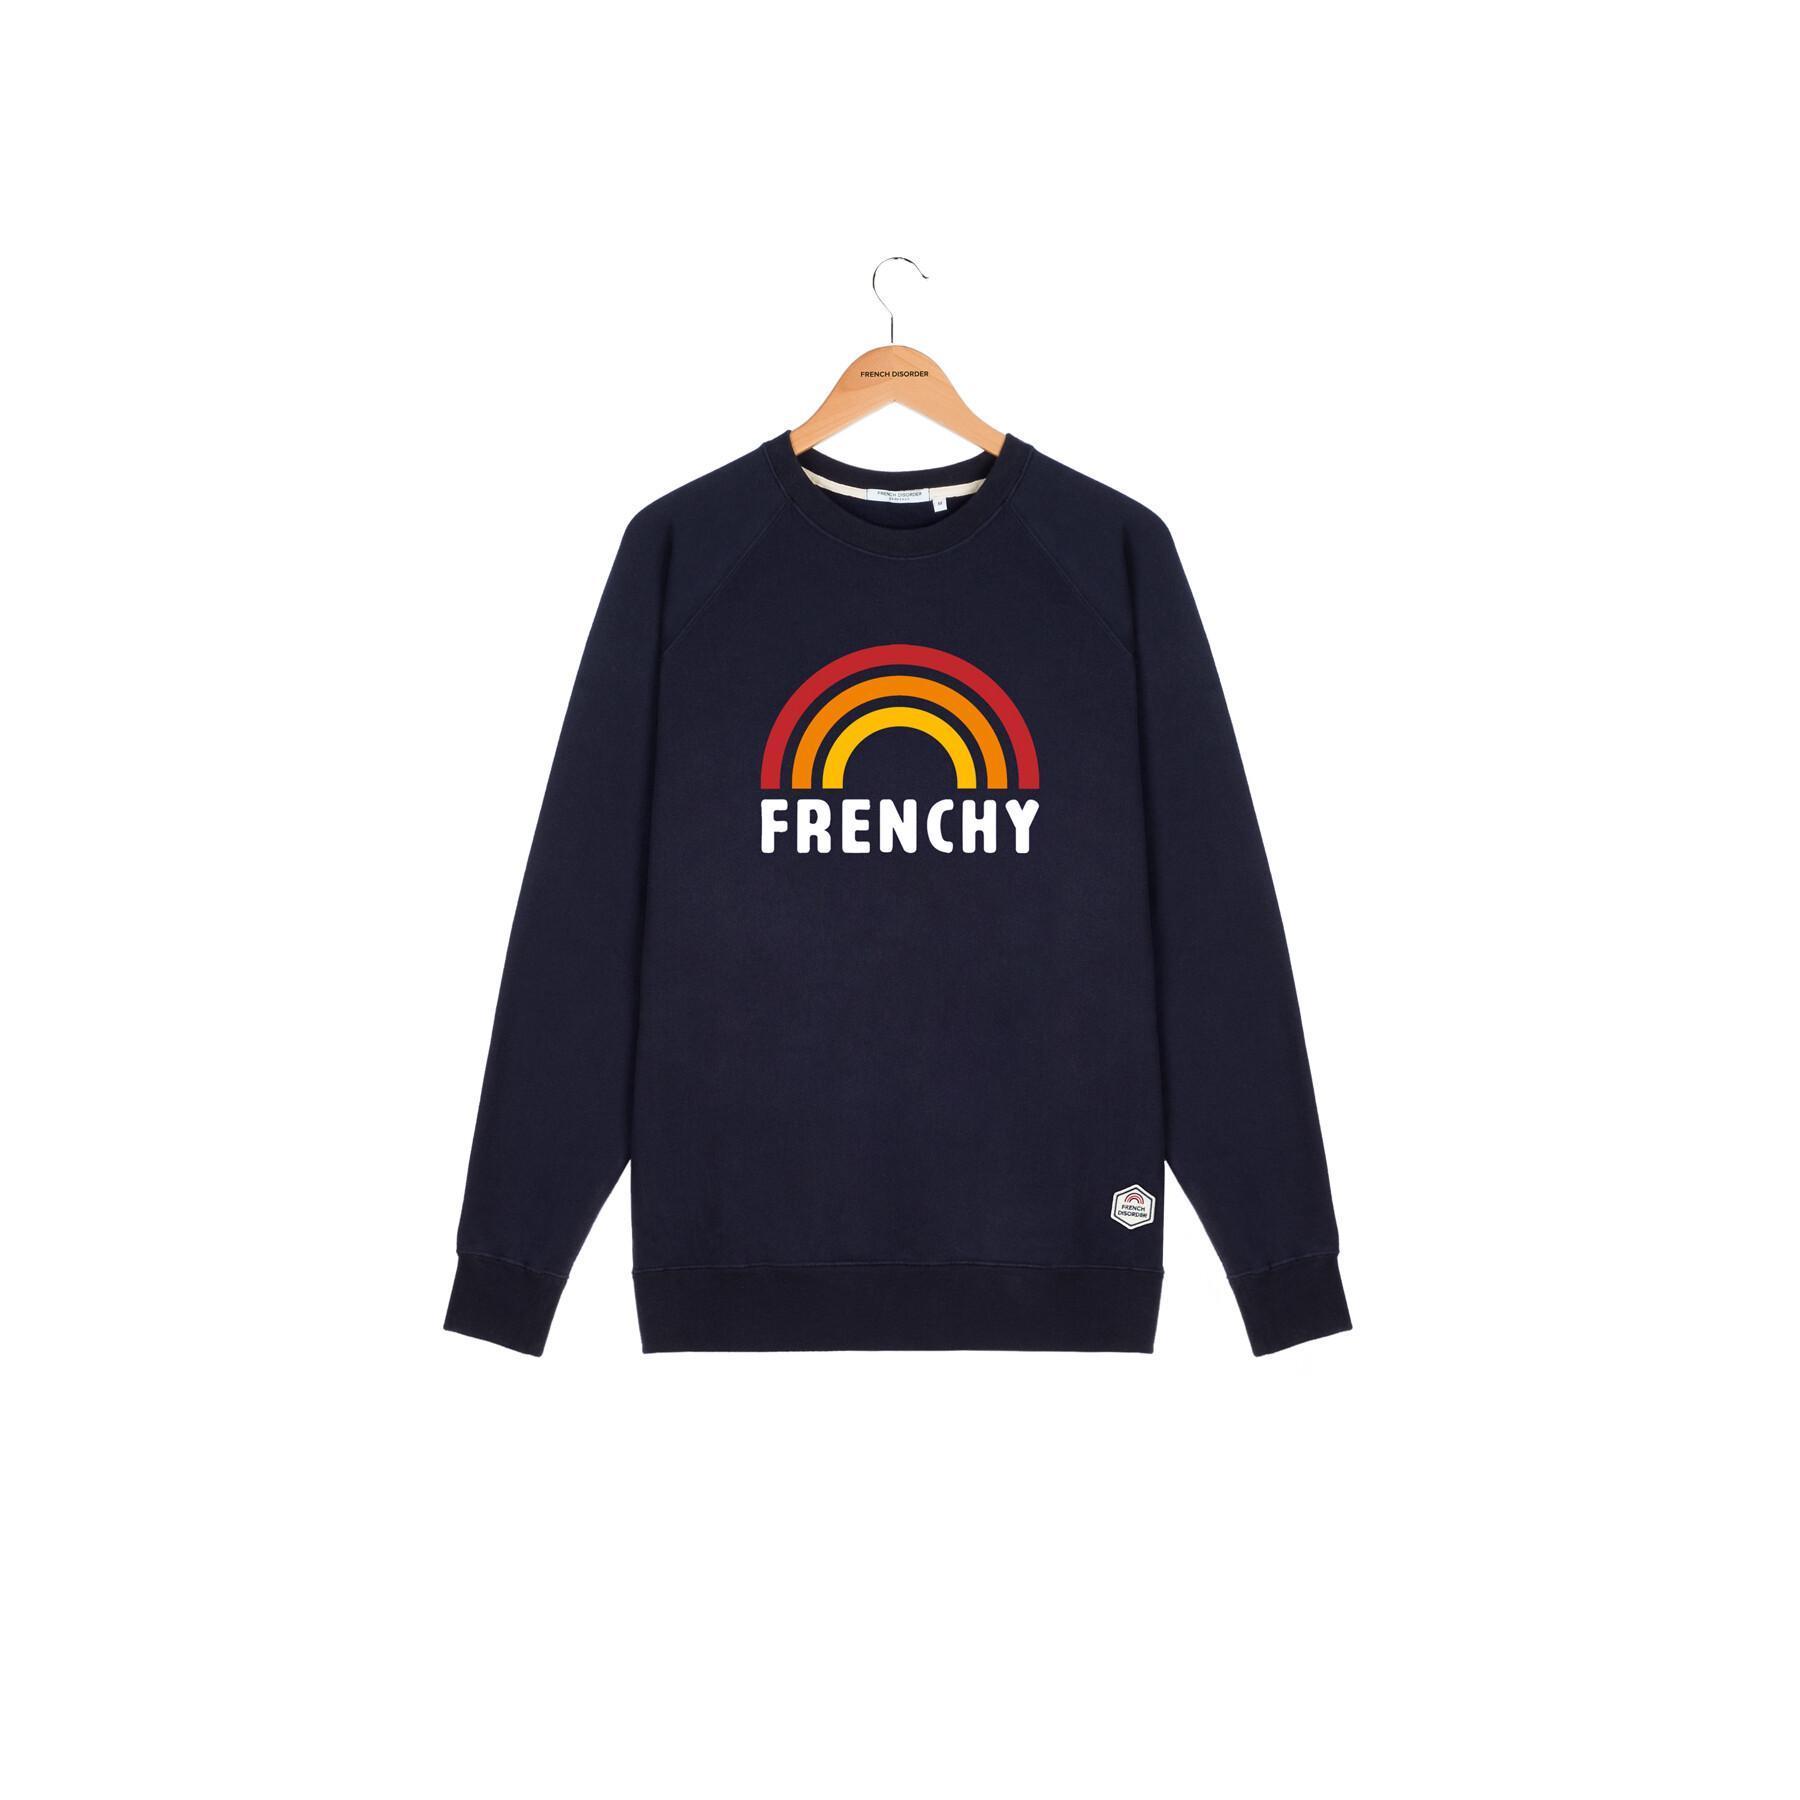 Sweatshirt Rundhalsausschnitt French Disorder Frenchy